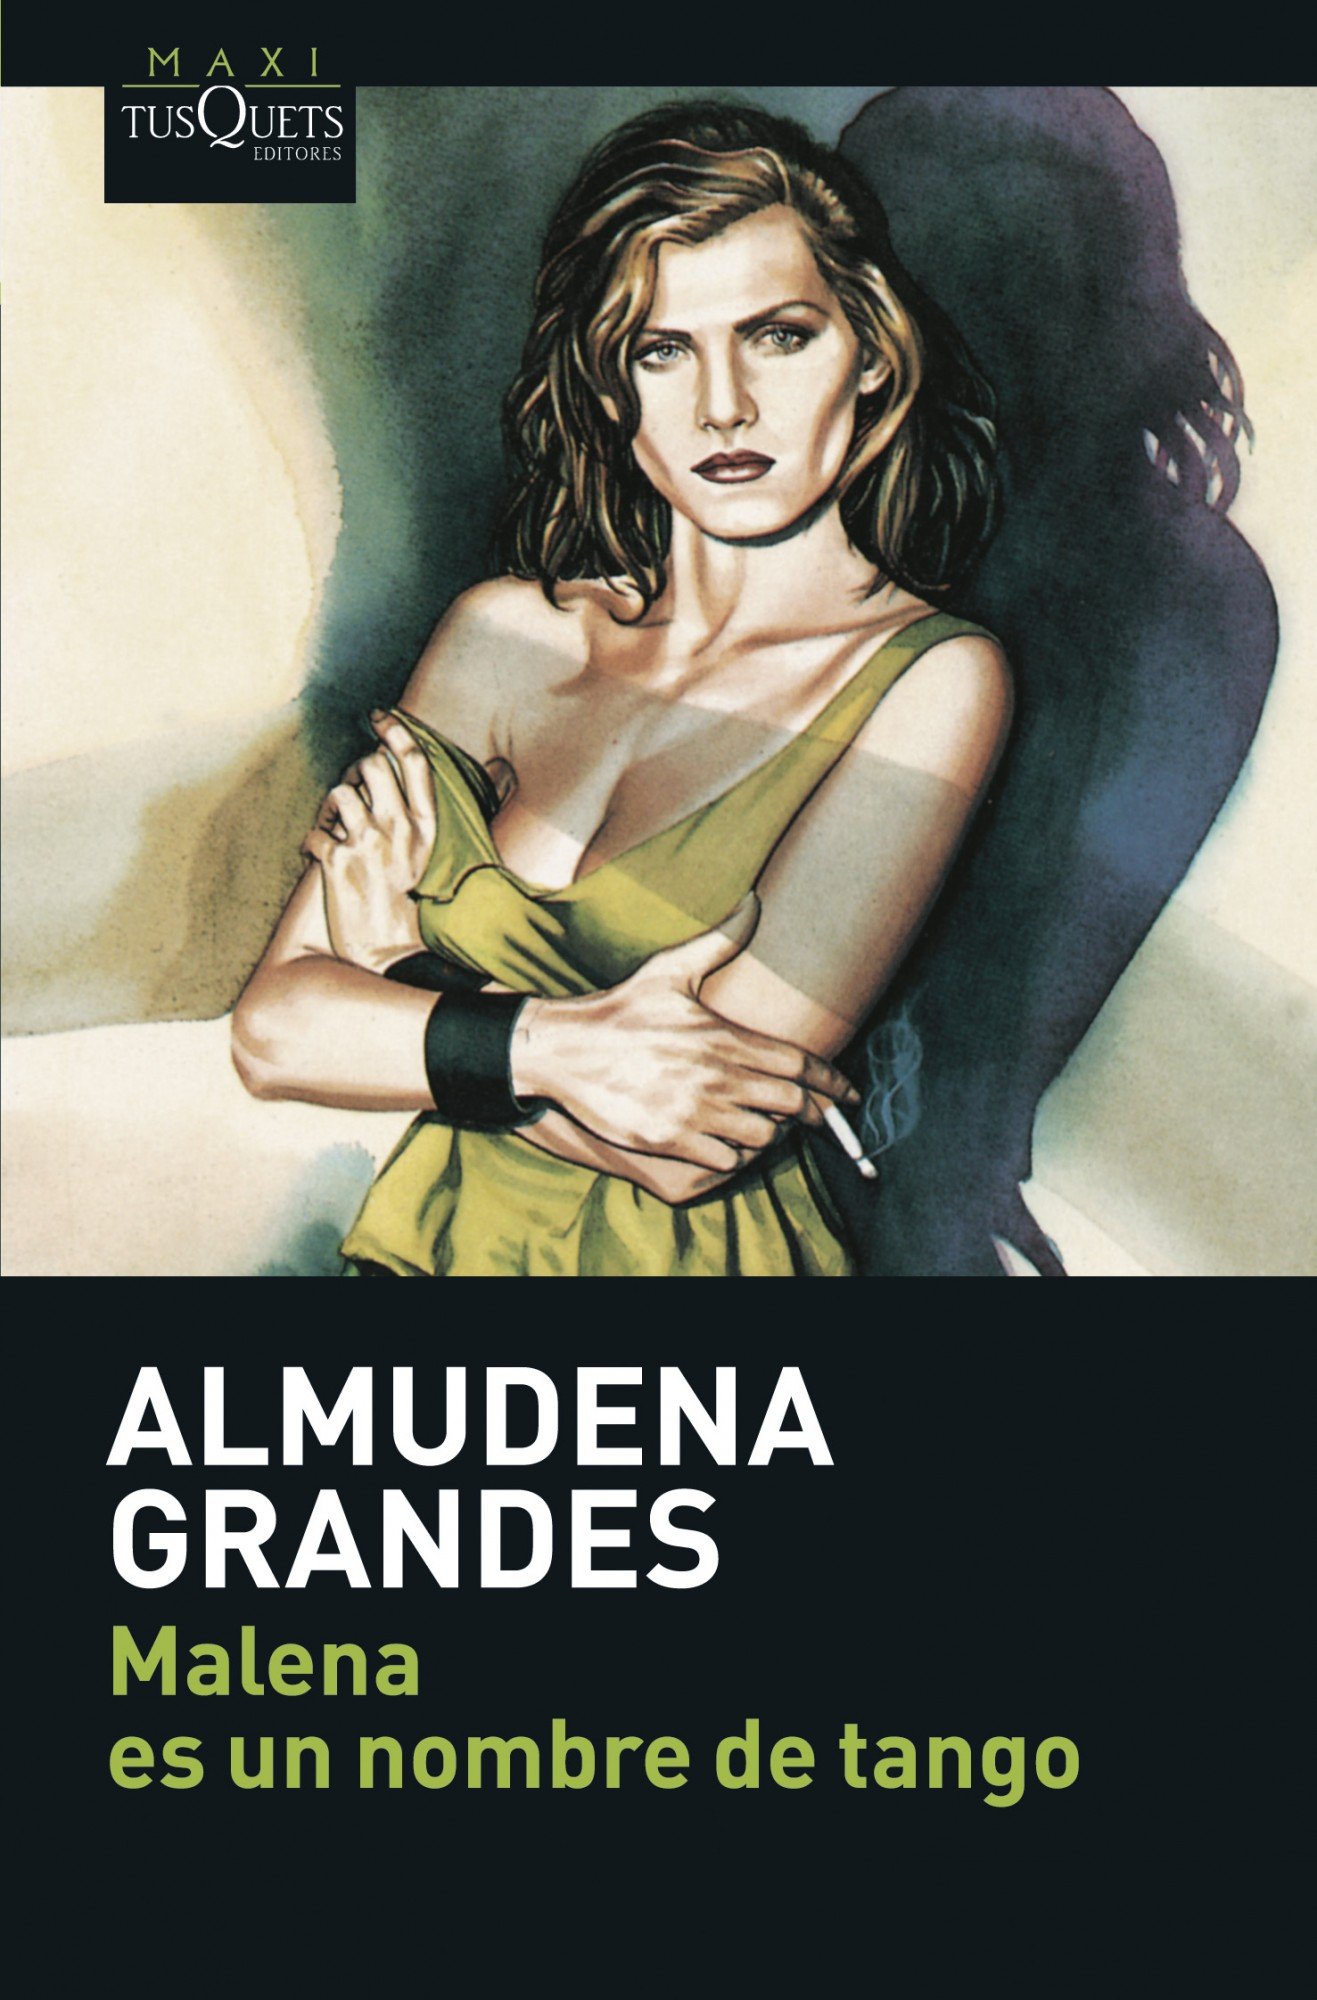 Malena es nombre de tango Almudena Grandes